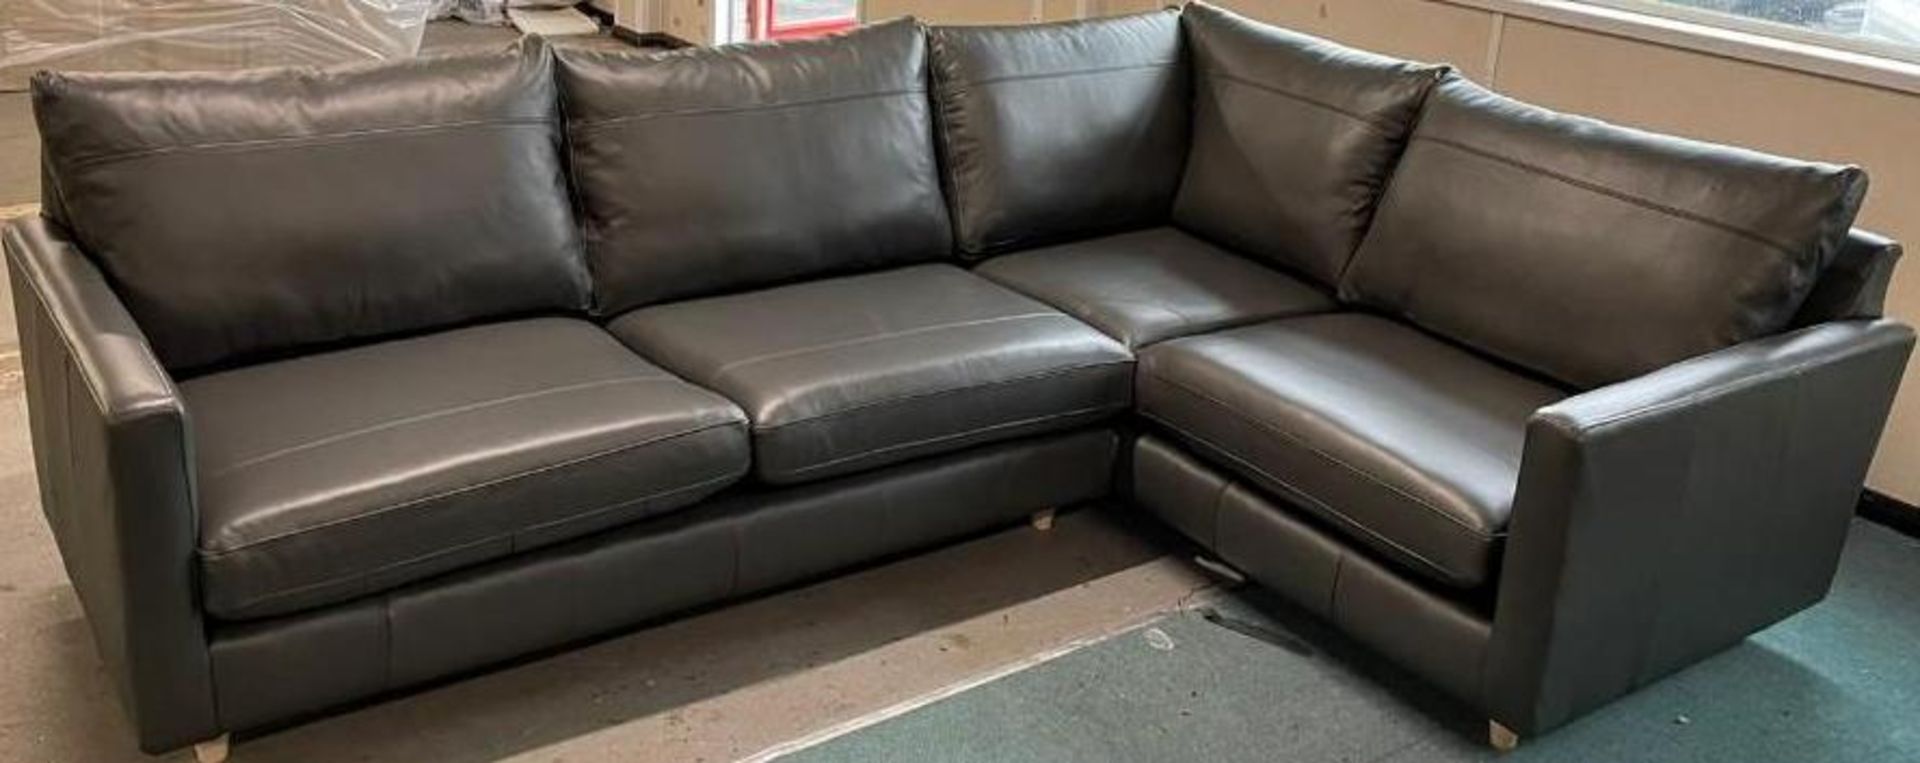 Brand New John Lewis 100% leather Bailey corner sofa in Chestnut Brown - Bild 2 aus 4